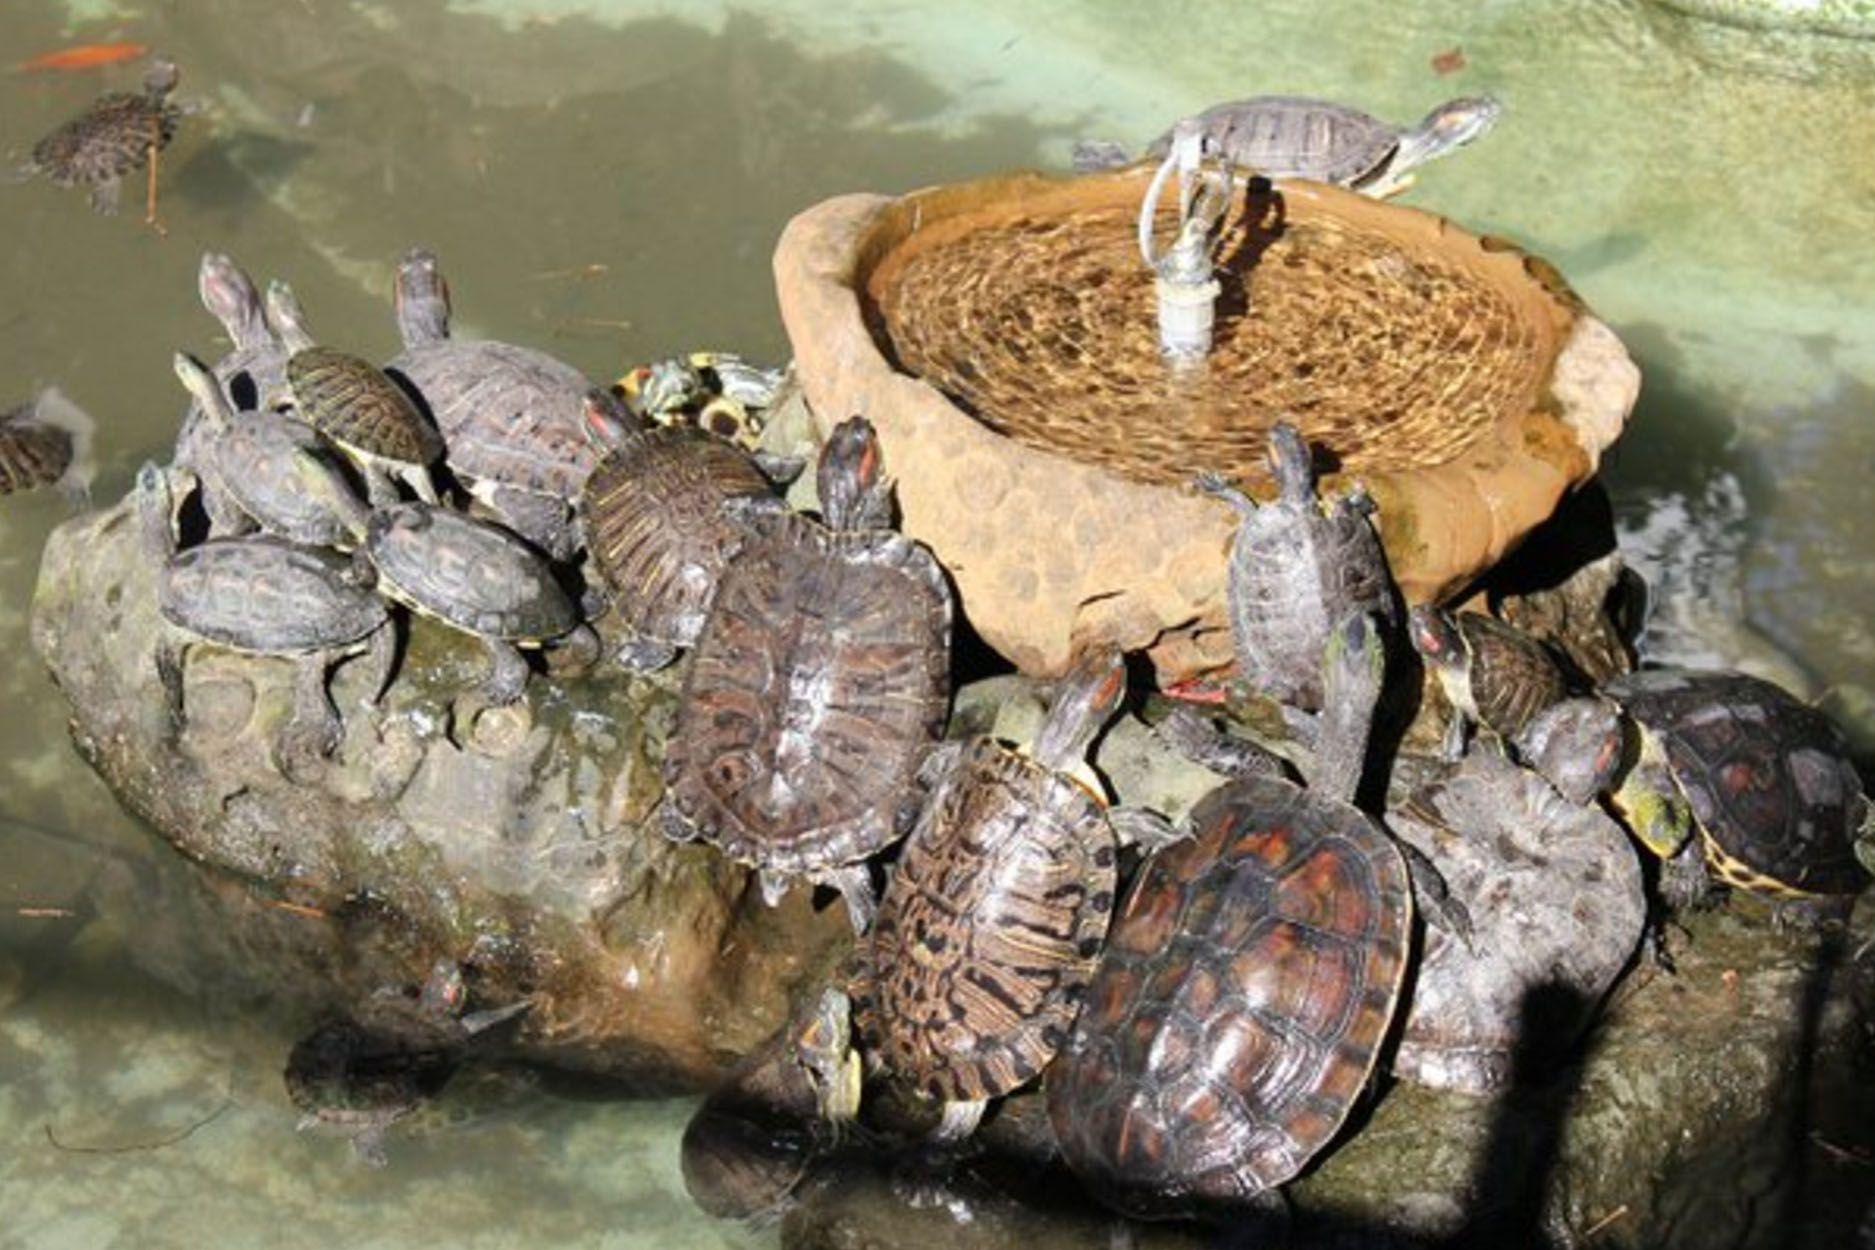 教育文章—給水龜最好的照顧